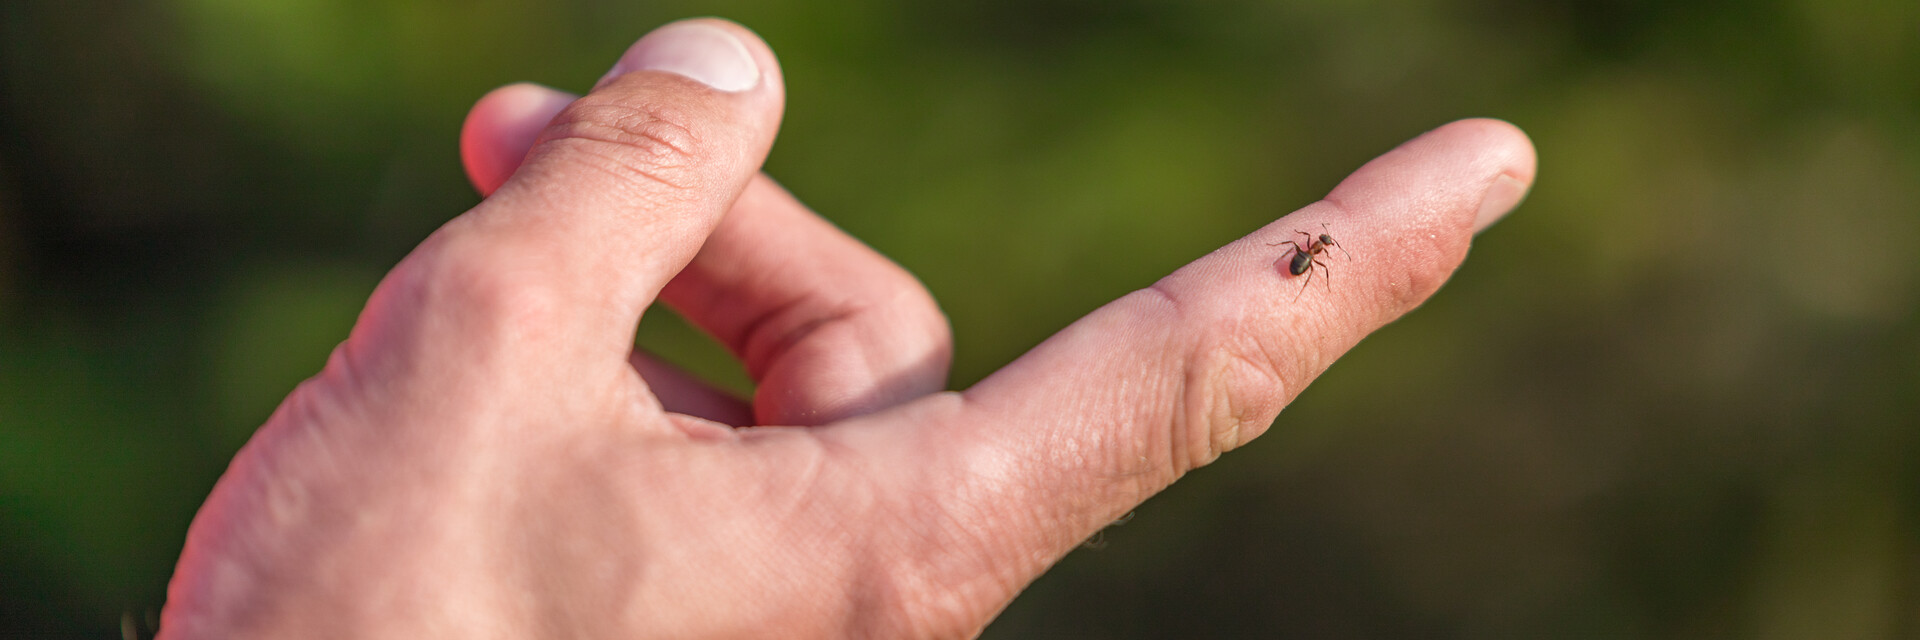 NaturLesen, kleine Ameise, am Zeigefinger | © TVB Naturpark Zirbitzkogel-Grebenzen | Mediadome